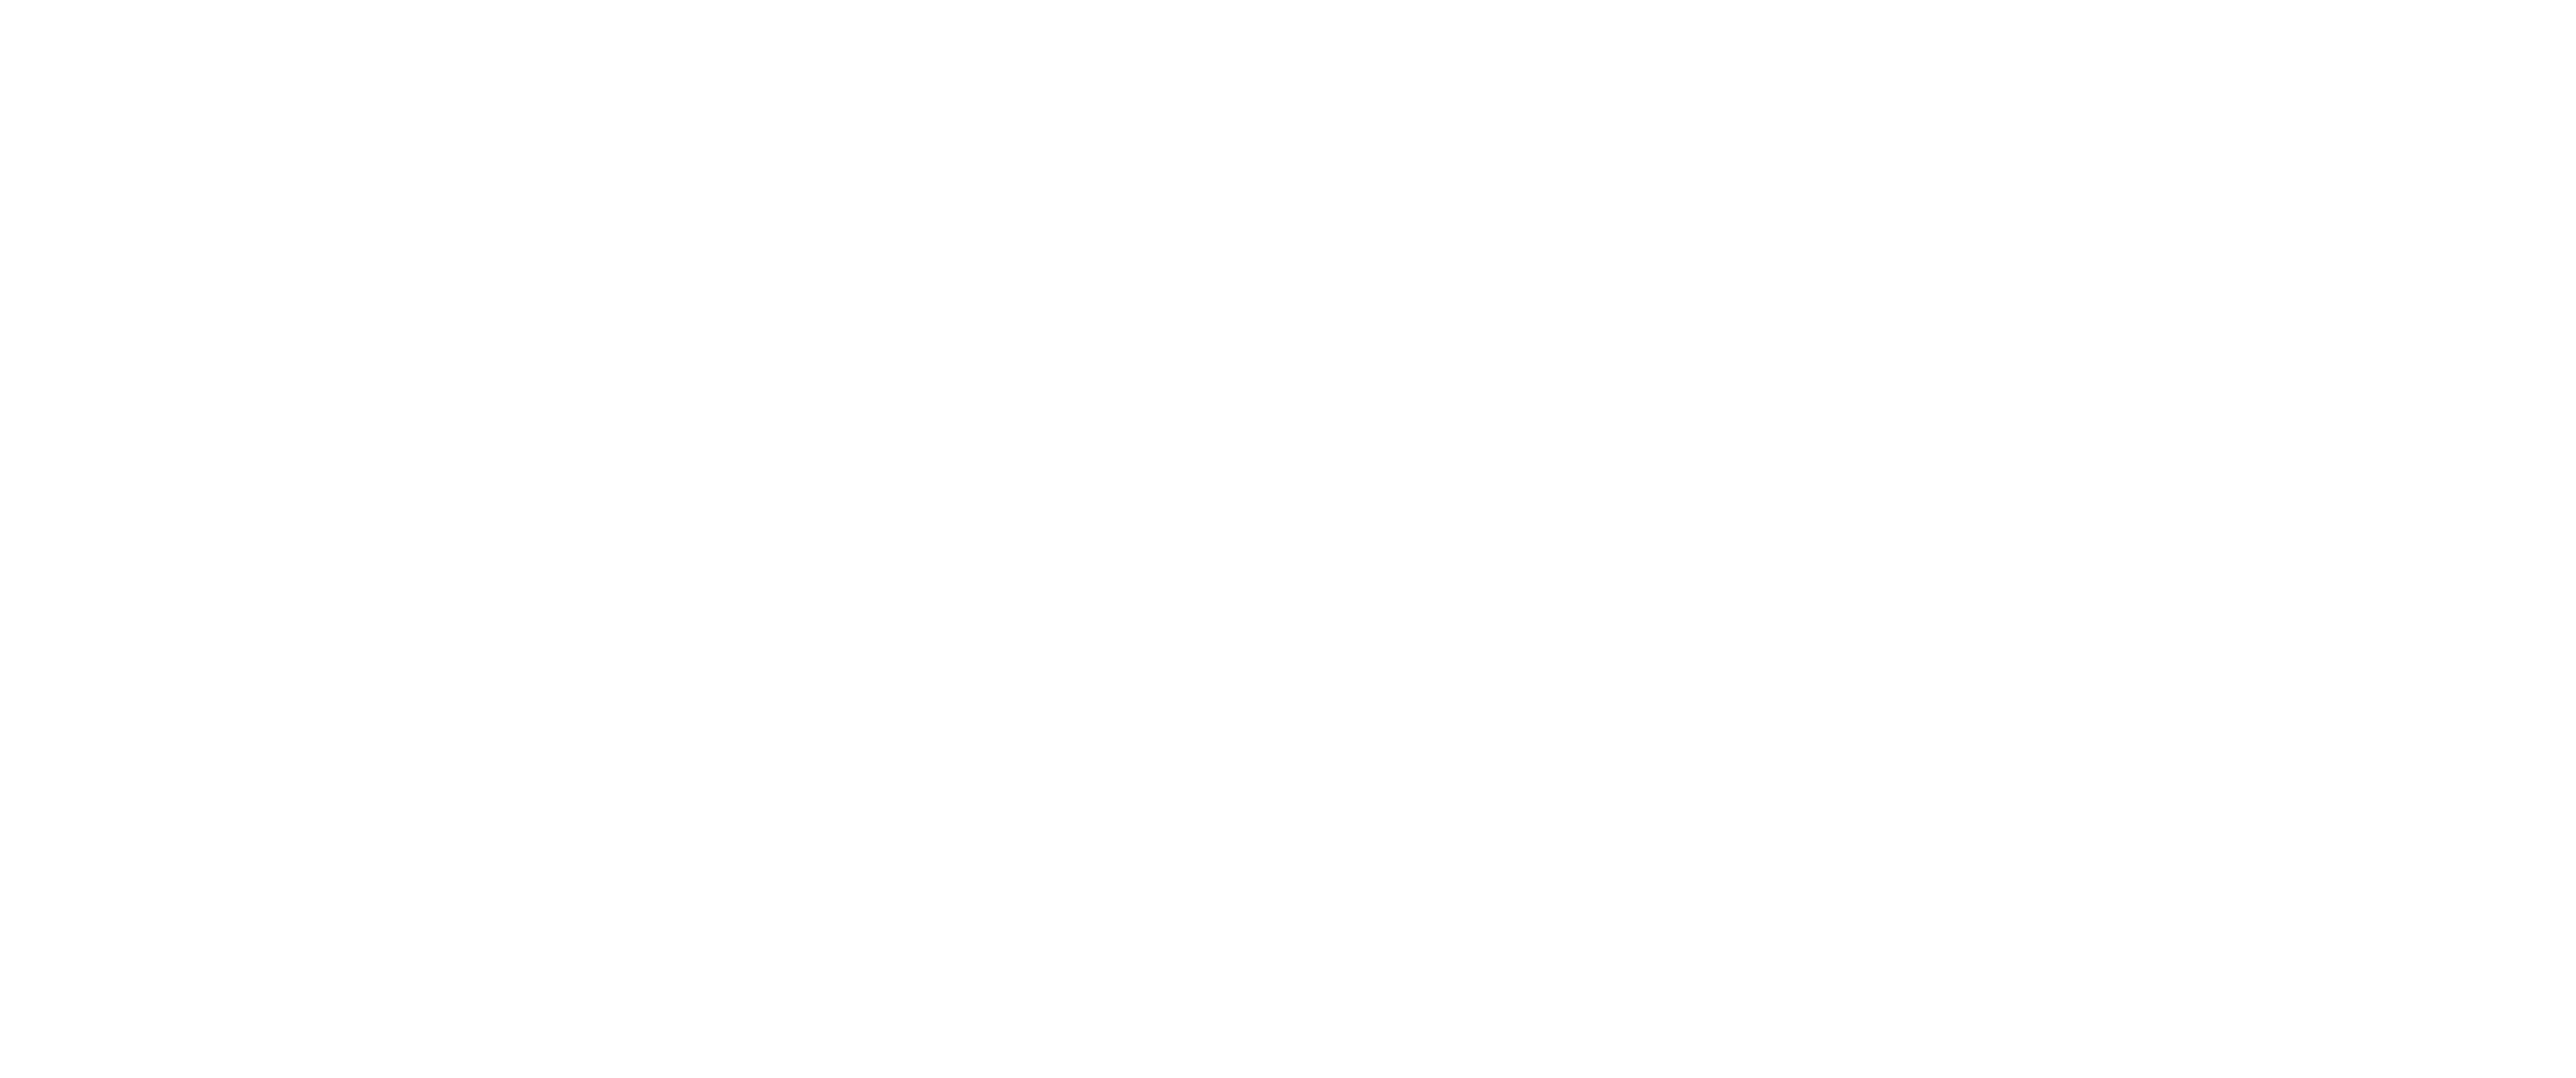 Design Maven Creative + Co.